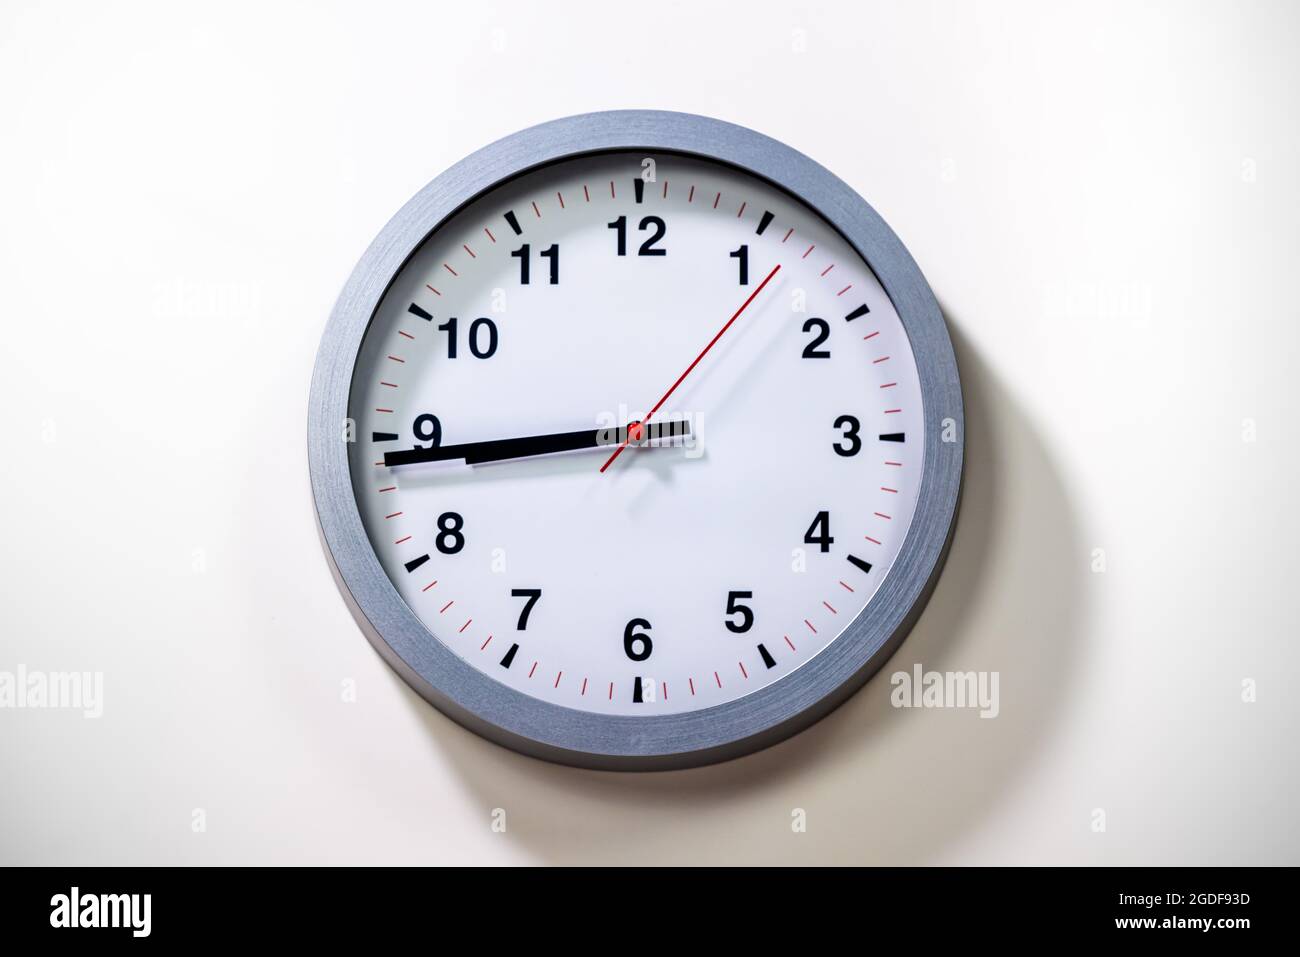 El reloj de pared gris muestra la hora. Moderno reloj de pared con marco gris sobre fondo blanco. Cerca de un reloj, con un puntero de tiempo negro y un segundo poin rojo Foto de stock